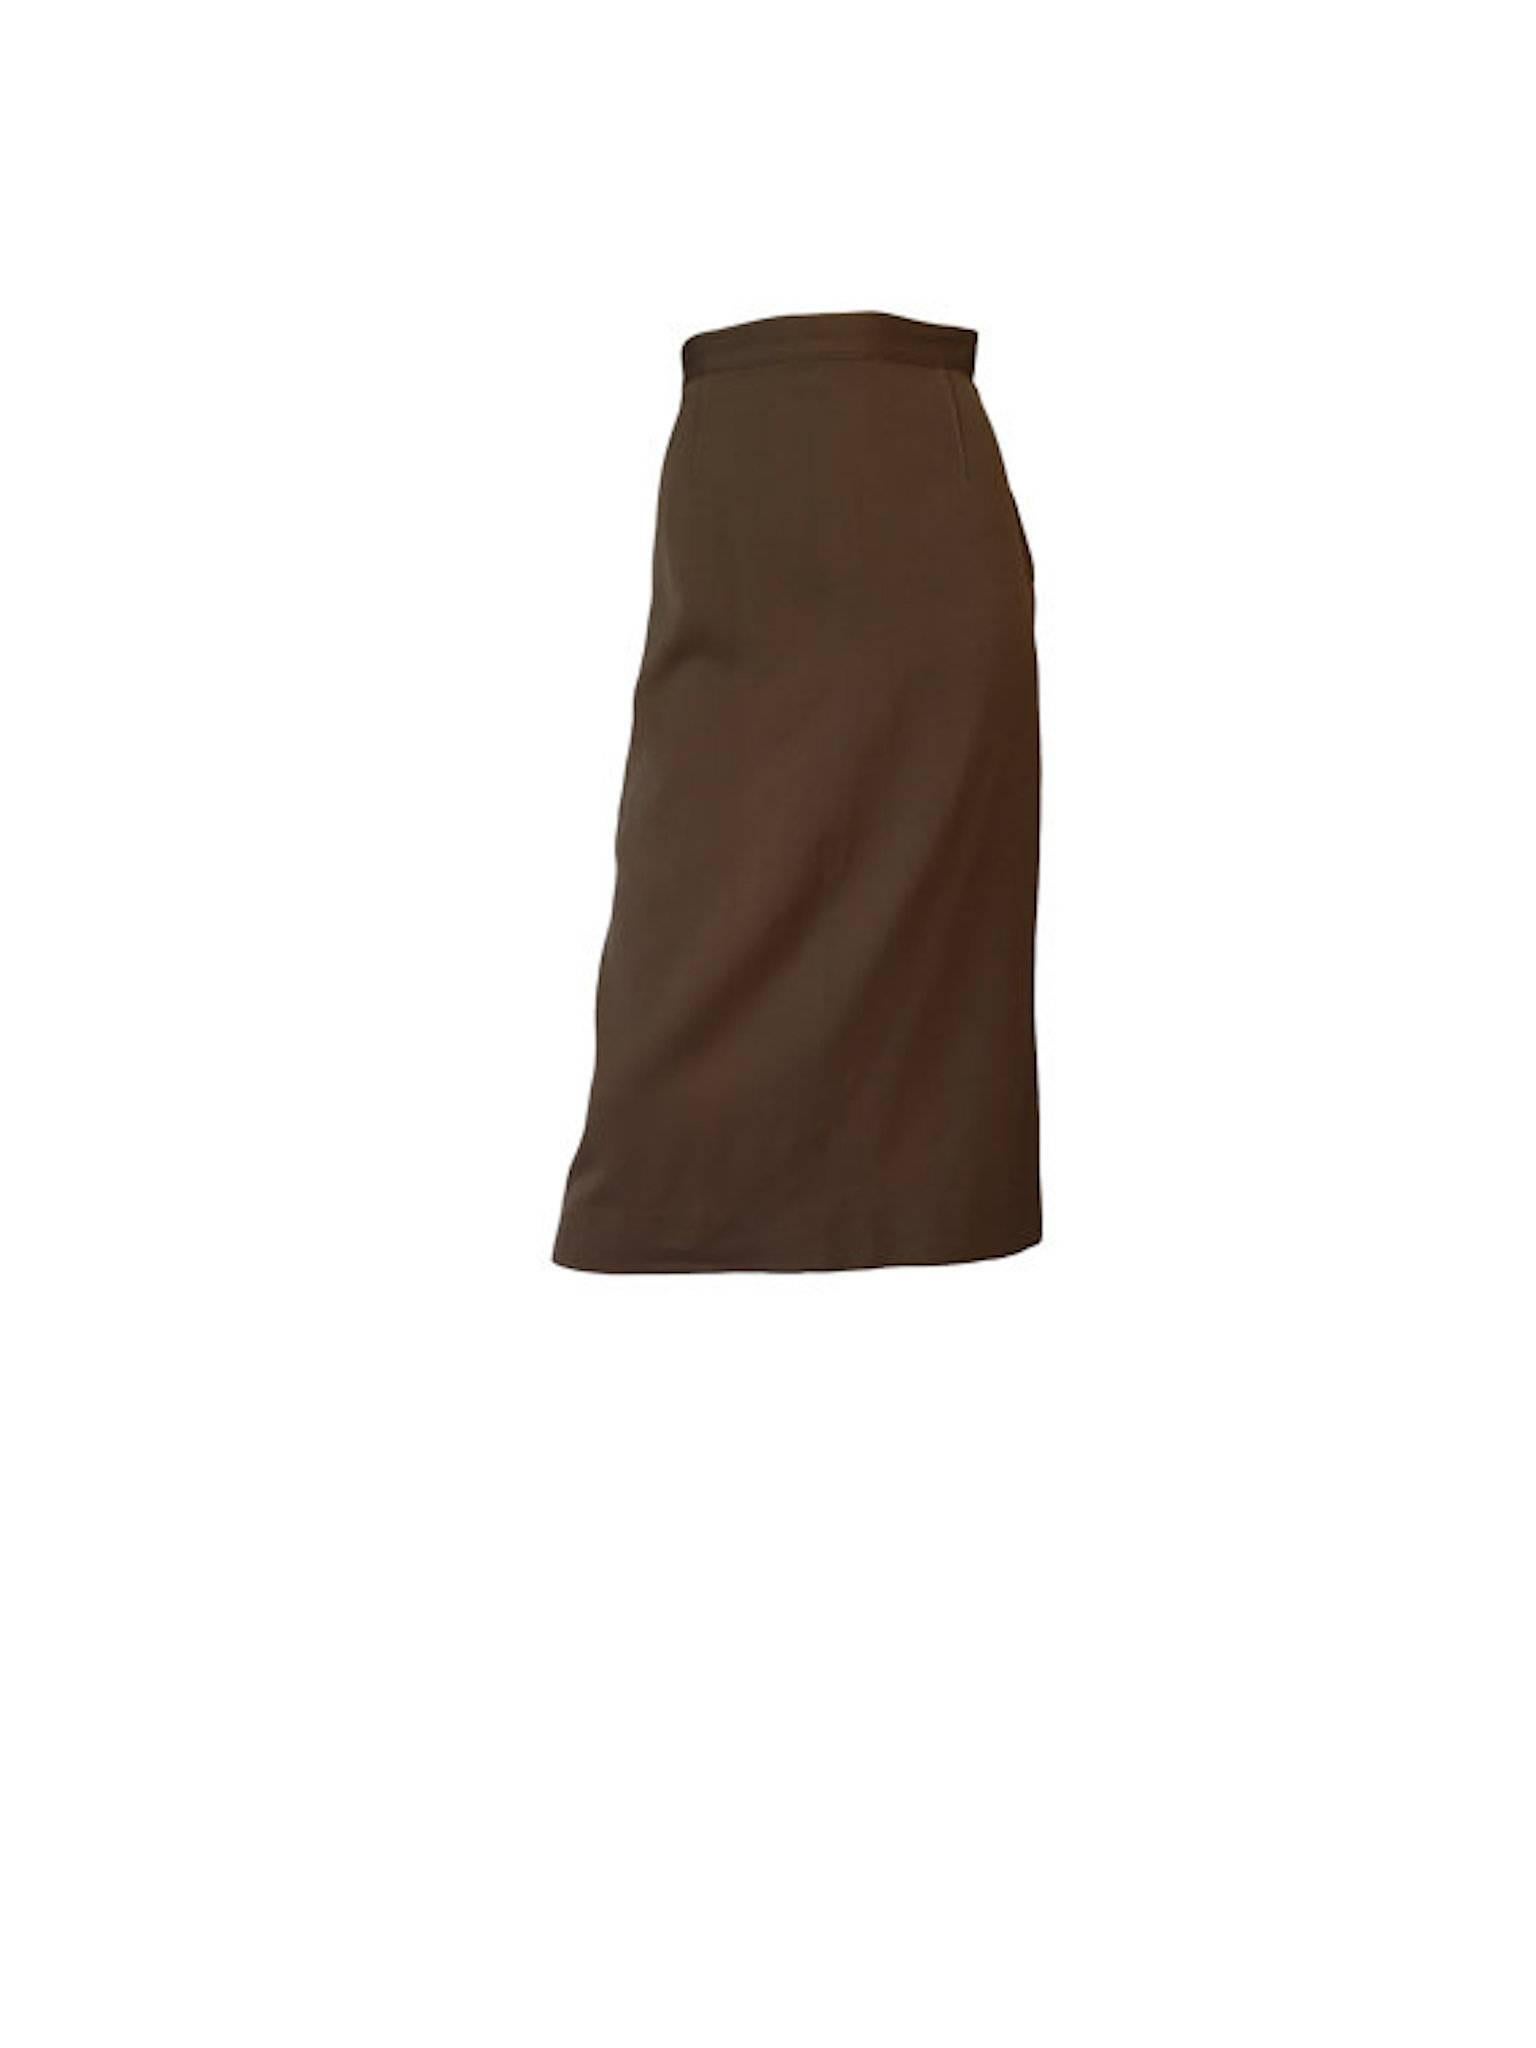 Brown Gilbert Bests Apparel Vintage 1940s Gabardine Wool Skirt Jacket Suit Set UK 8/10